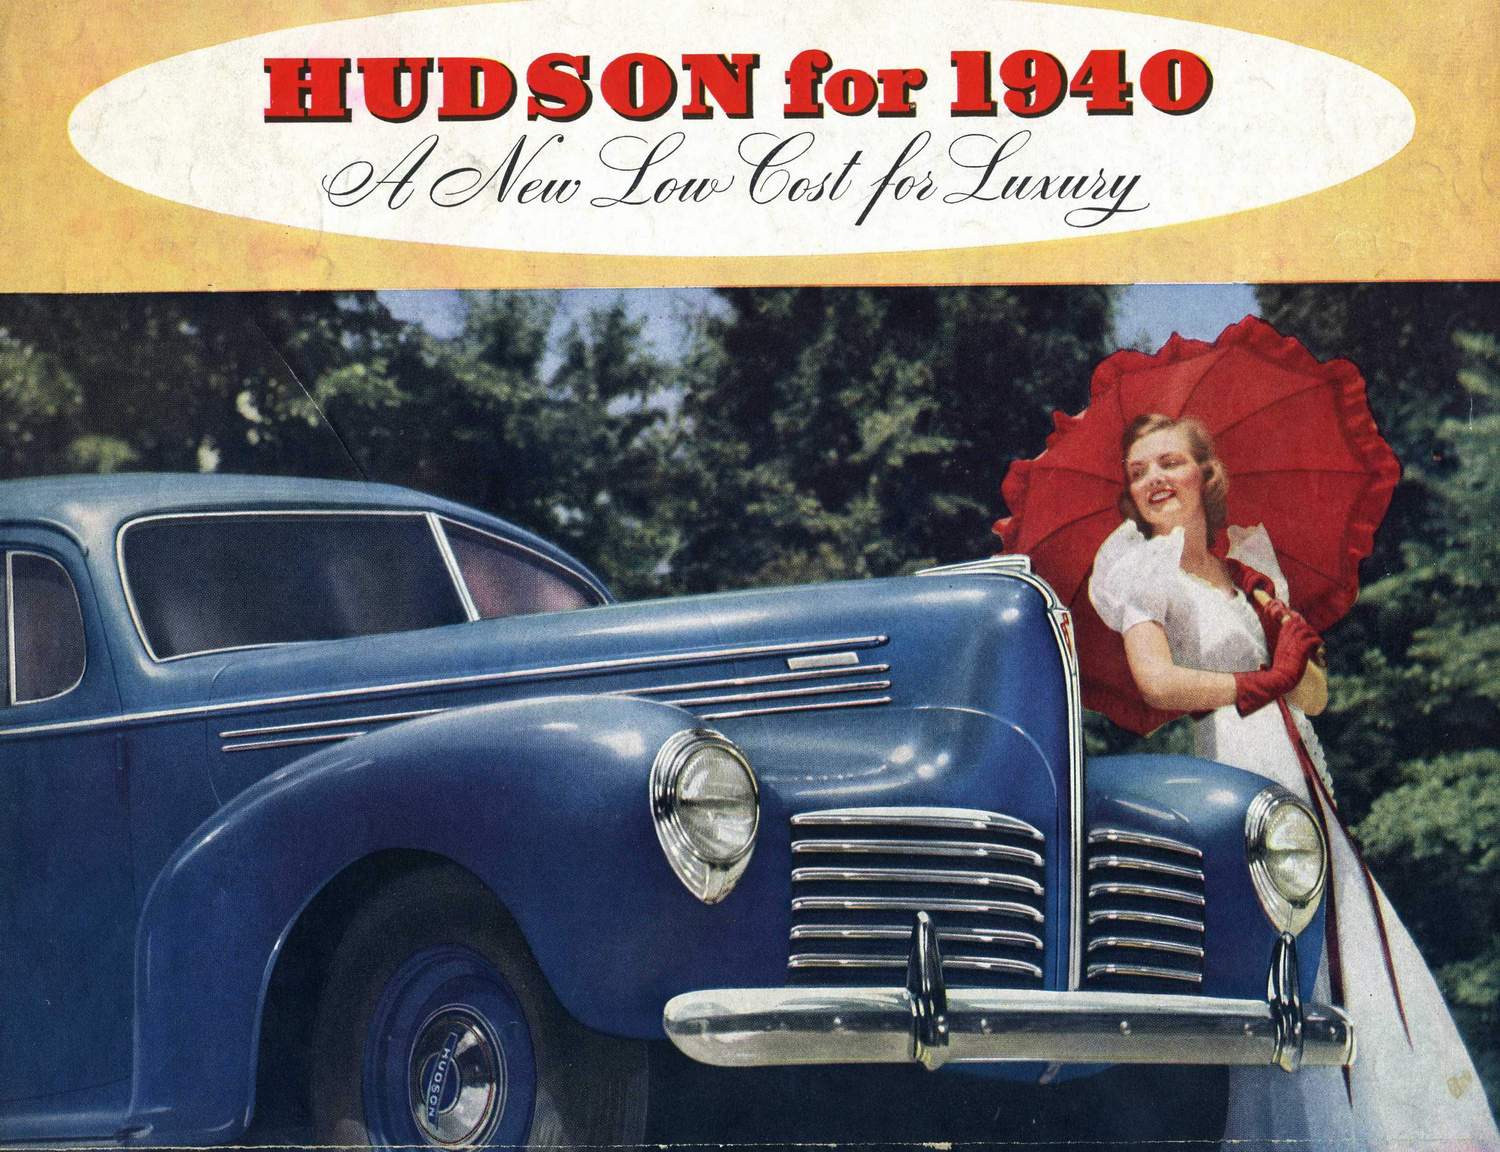 1940 Hudson Foldout-a-01